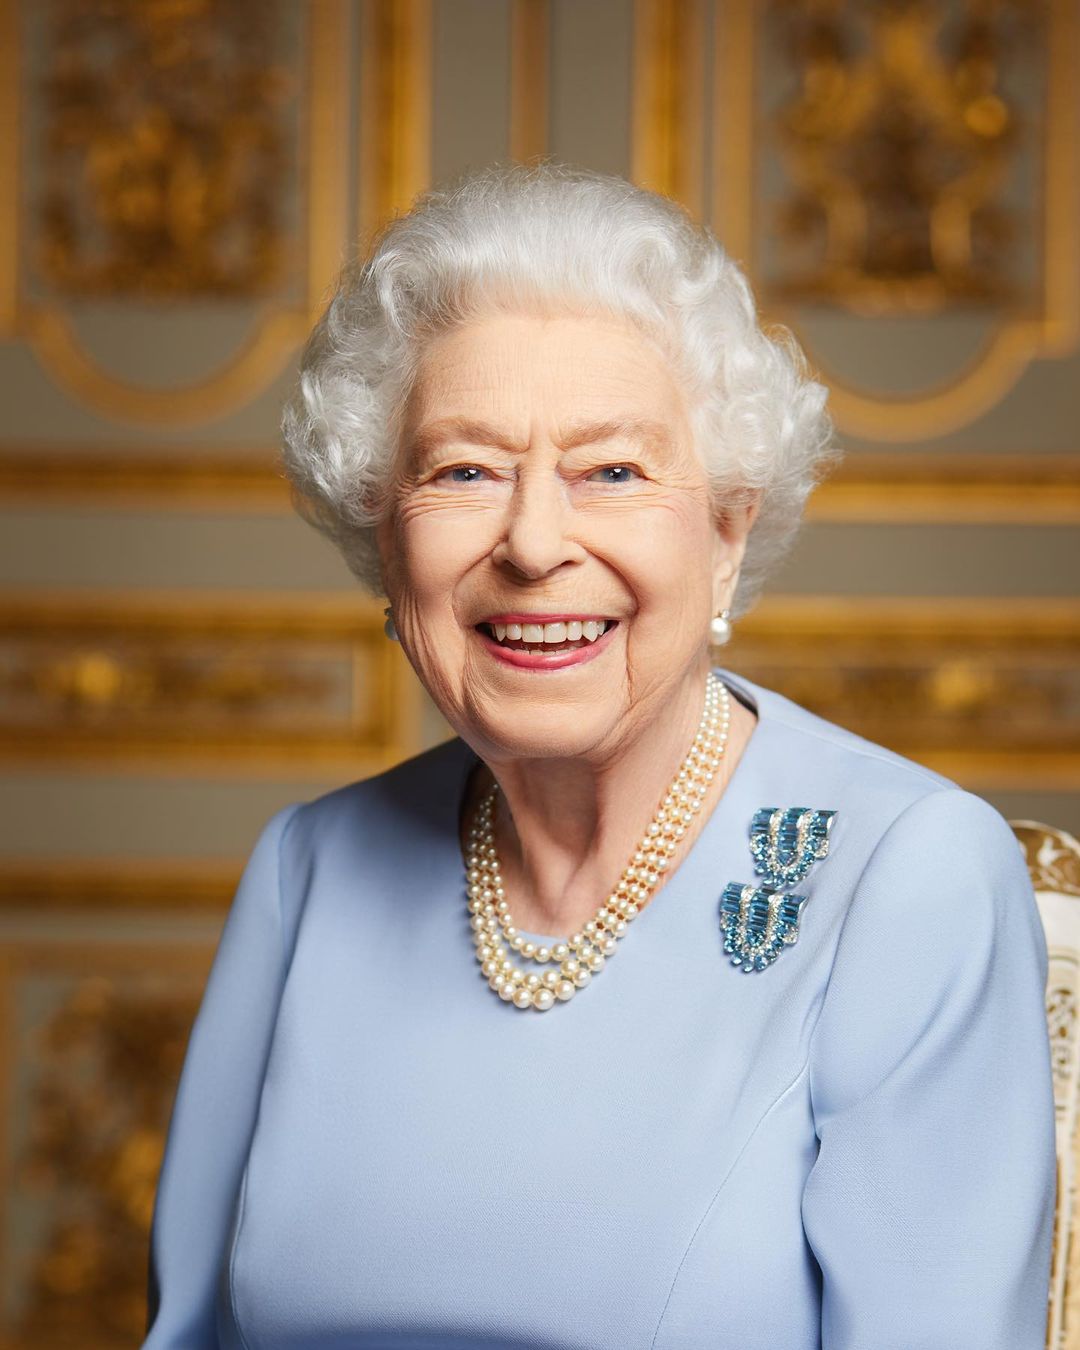 Букингемский дворец показал последний официальный портрет королевы Елизаветы II